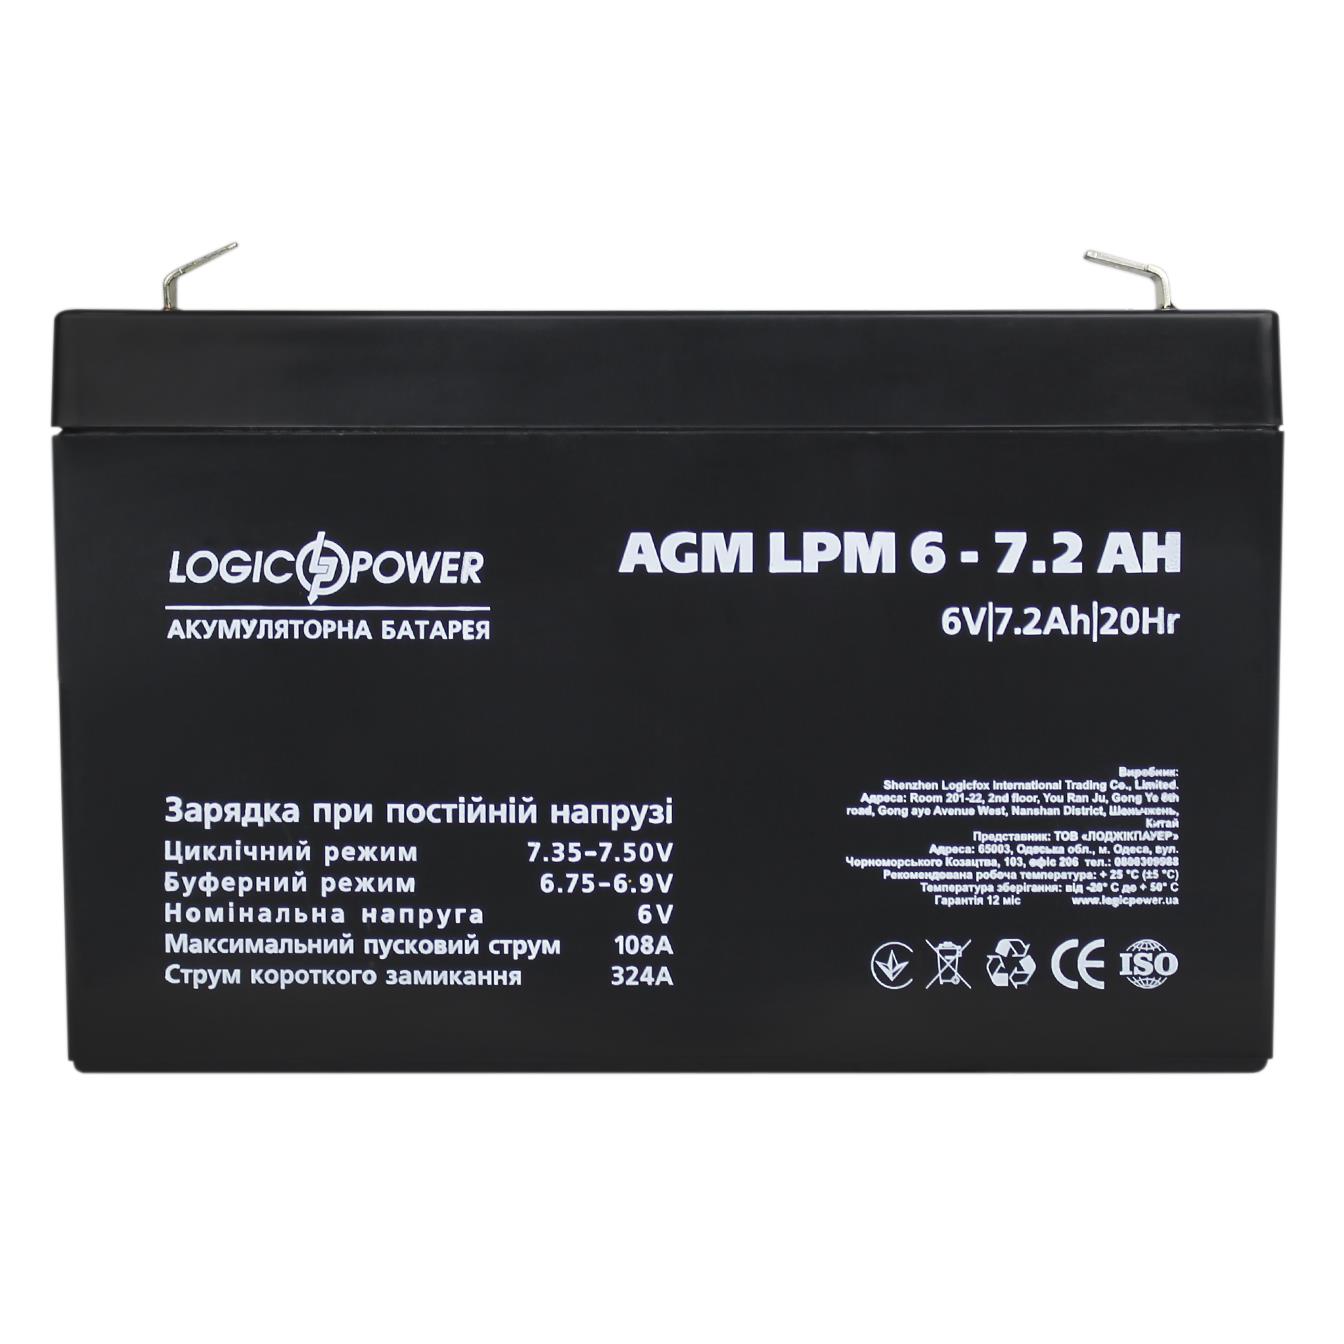 продаём LogicPower AGM LPM 6V - 7.2 Ah (3859) в Украине - фото 4